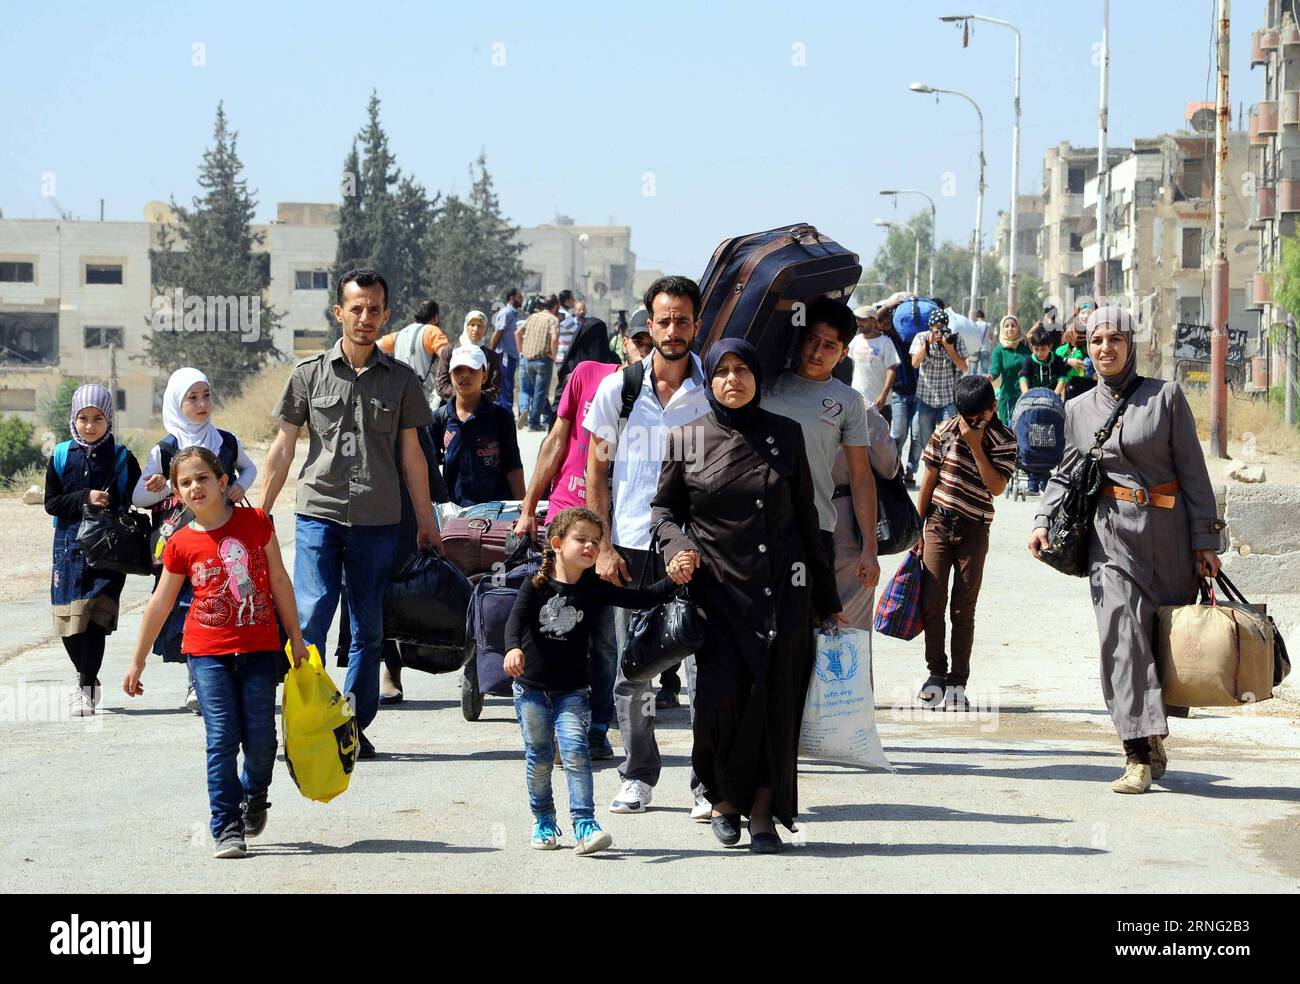 Bilder des Tages Syrien: Menschen flüchten aus Muadamiyeh bei Damaskus (160902) -- DAMASCO, 2 settembre 2016 -- i civili siriani trasportano i loro averi per evacuare dalla città ribelle di Muadamiyeh, nella zona rurale di Damasco, capitale della Siria, il 2 settembre 2016. Quasi 300 civili, originari della città di Daraya per rifugiarsi, furono evacuati da Muadamiyeh in rifugi controllati dal governo nel sud di Damasco. SIRIA-DAMASCO-CIVILI-EVACUARE-RIBELLE-CITTÀ Ammar PUBLICATIONxNOTxINxCHN immagini il giorno in cui la popolazione siriana fugge a Damasco 160902 Damasco 2 settembre 2016 civili siriani ca Foto Stock